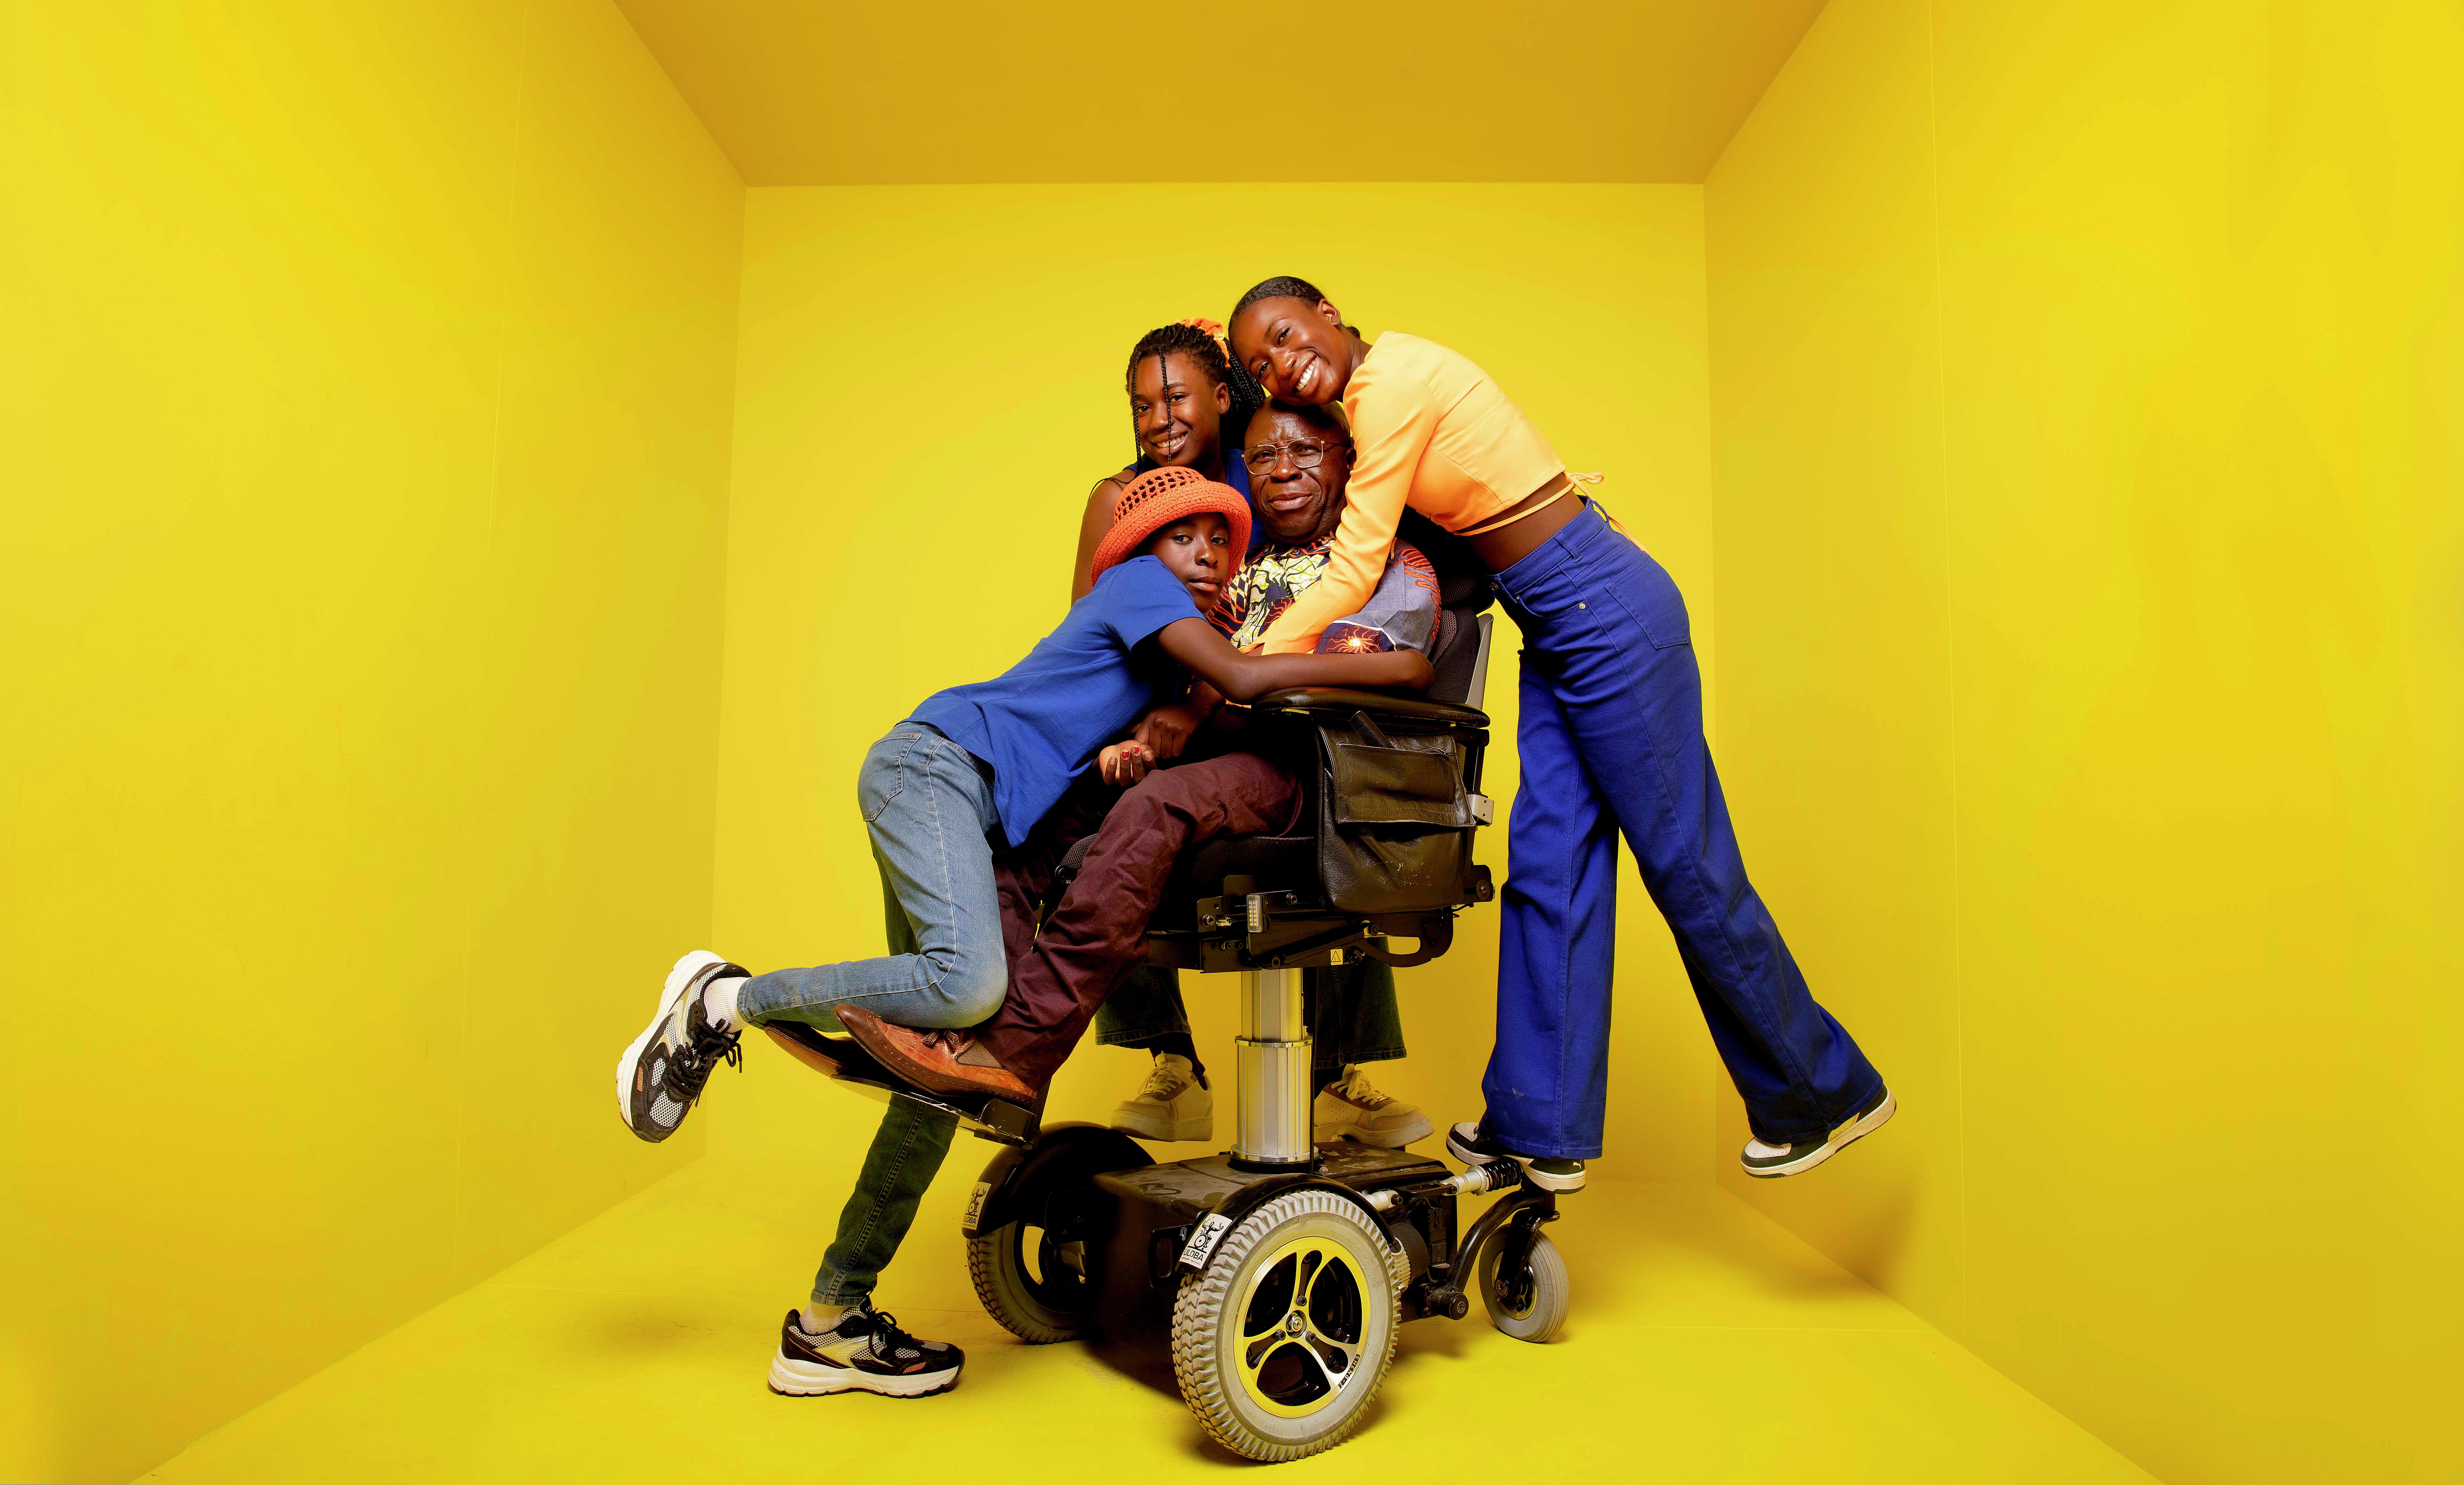 Bihayo og hans tre barn står å klemmer inne i en gul boks,